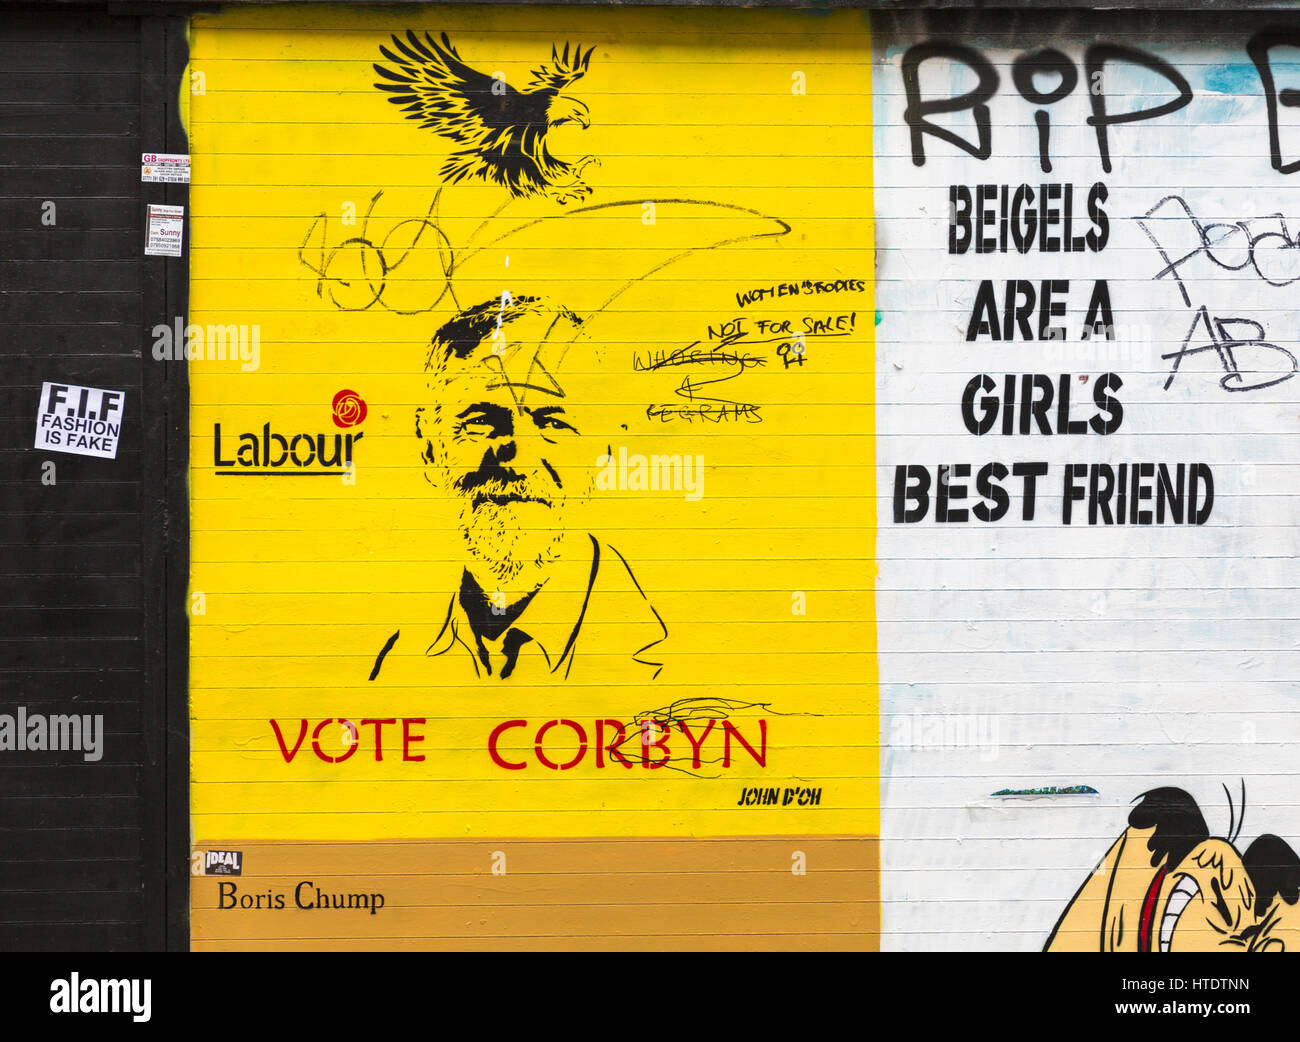 Voter Corbyn, Boris Chump et beigels sont a girls best friend, womens corps pas à vendre sur graffiti mural Mur à Shoreditch, Londres en septembre Banque D'Images